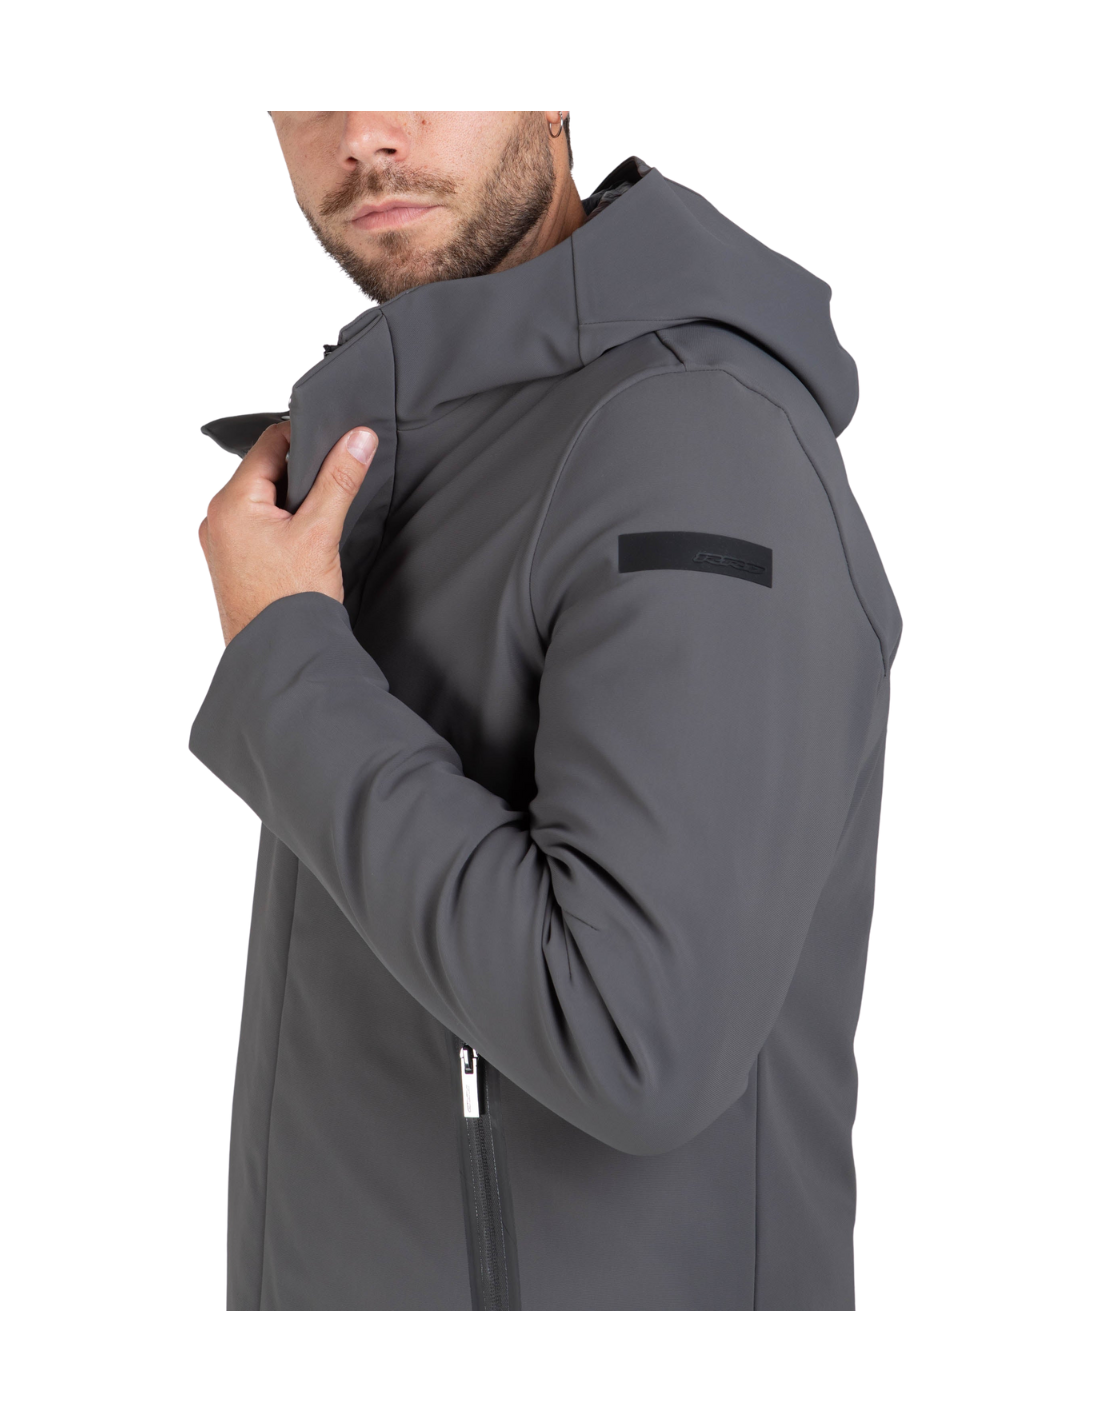 RRD WINTER THERMO GRIGIO giacca termica uomo con cappuccio, waterproof